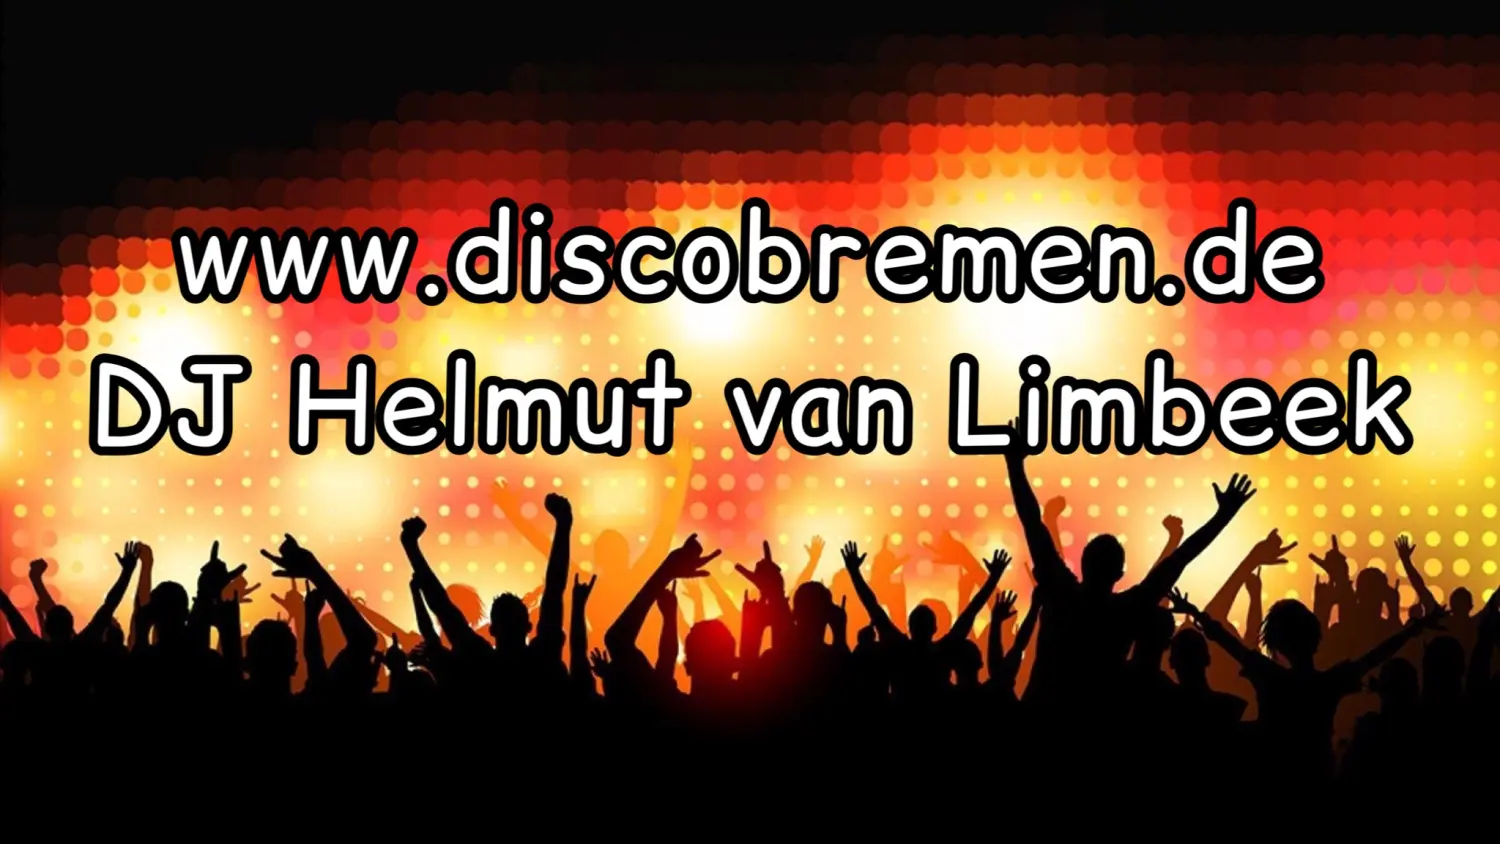 Bannerbild von DJ Helmut van Limbeek